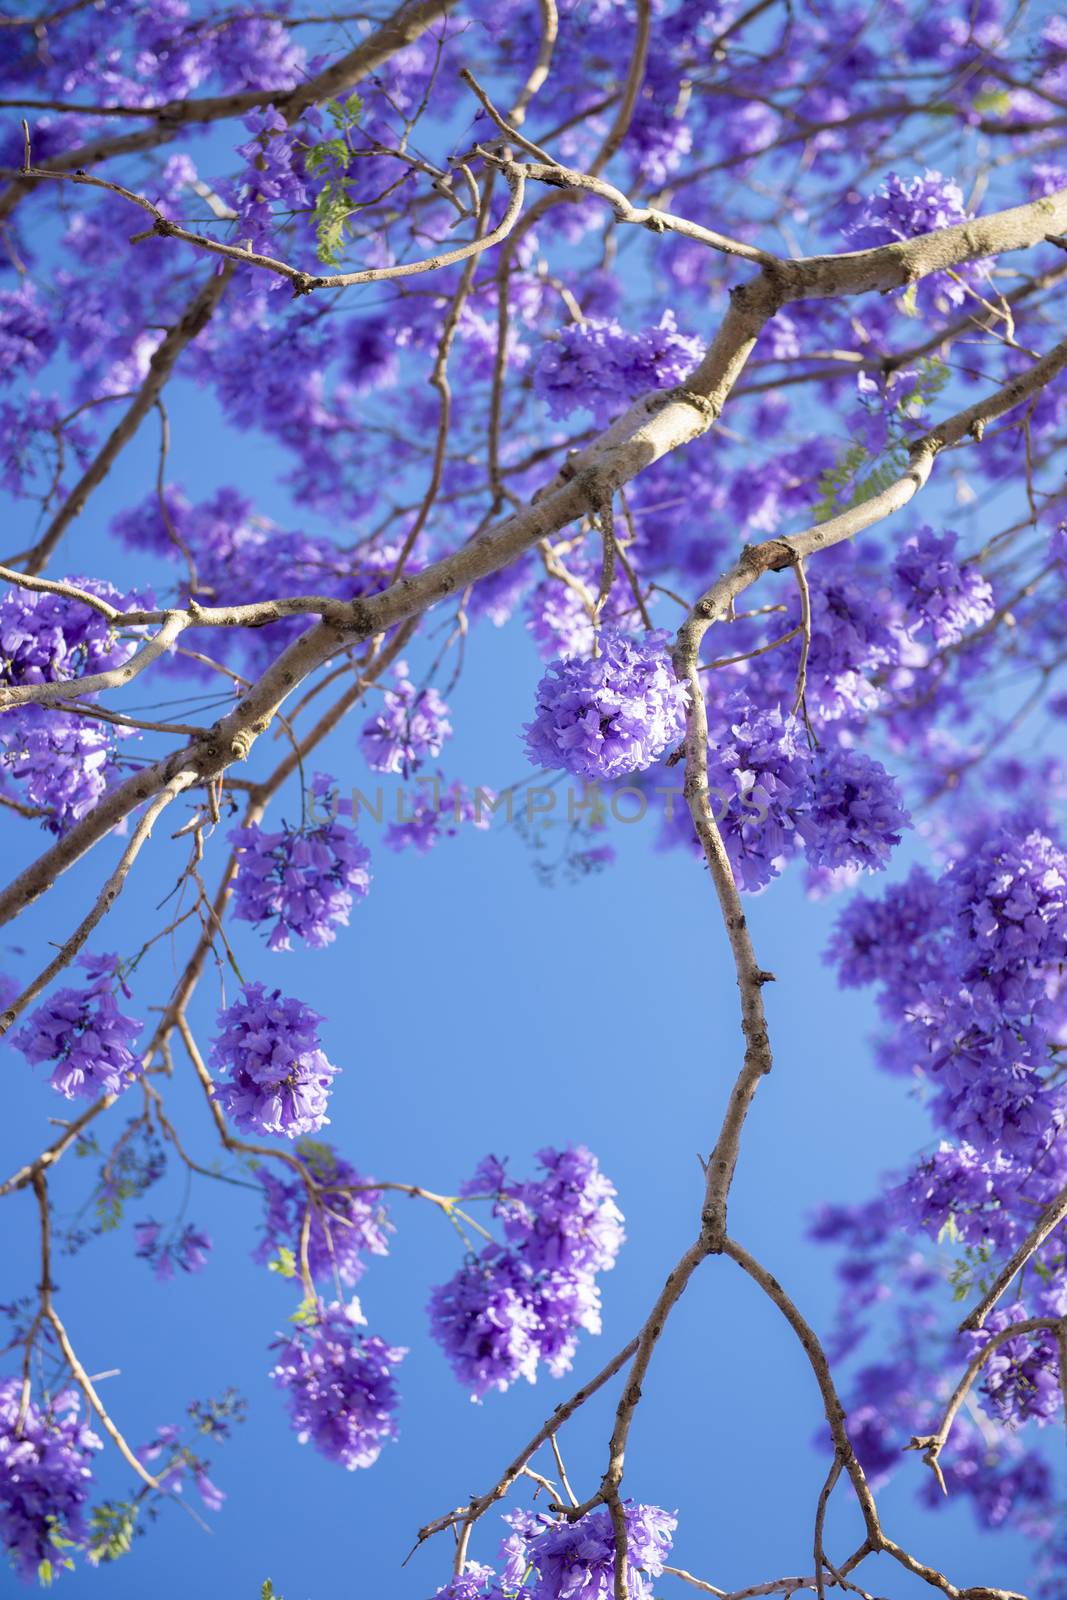 Beautiful deep purple coloured jacaranda tree in bloom in Brisbane, Queensland.